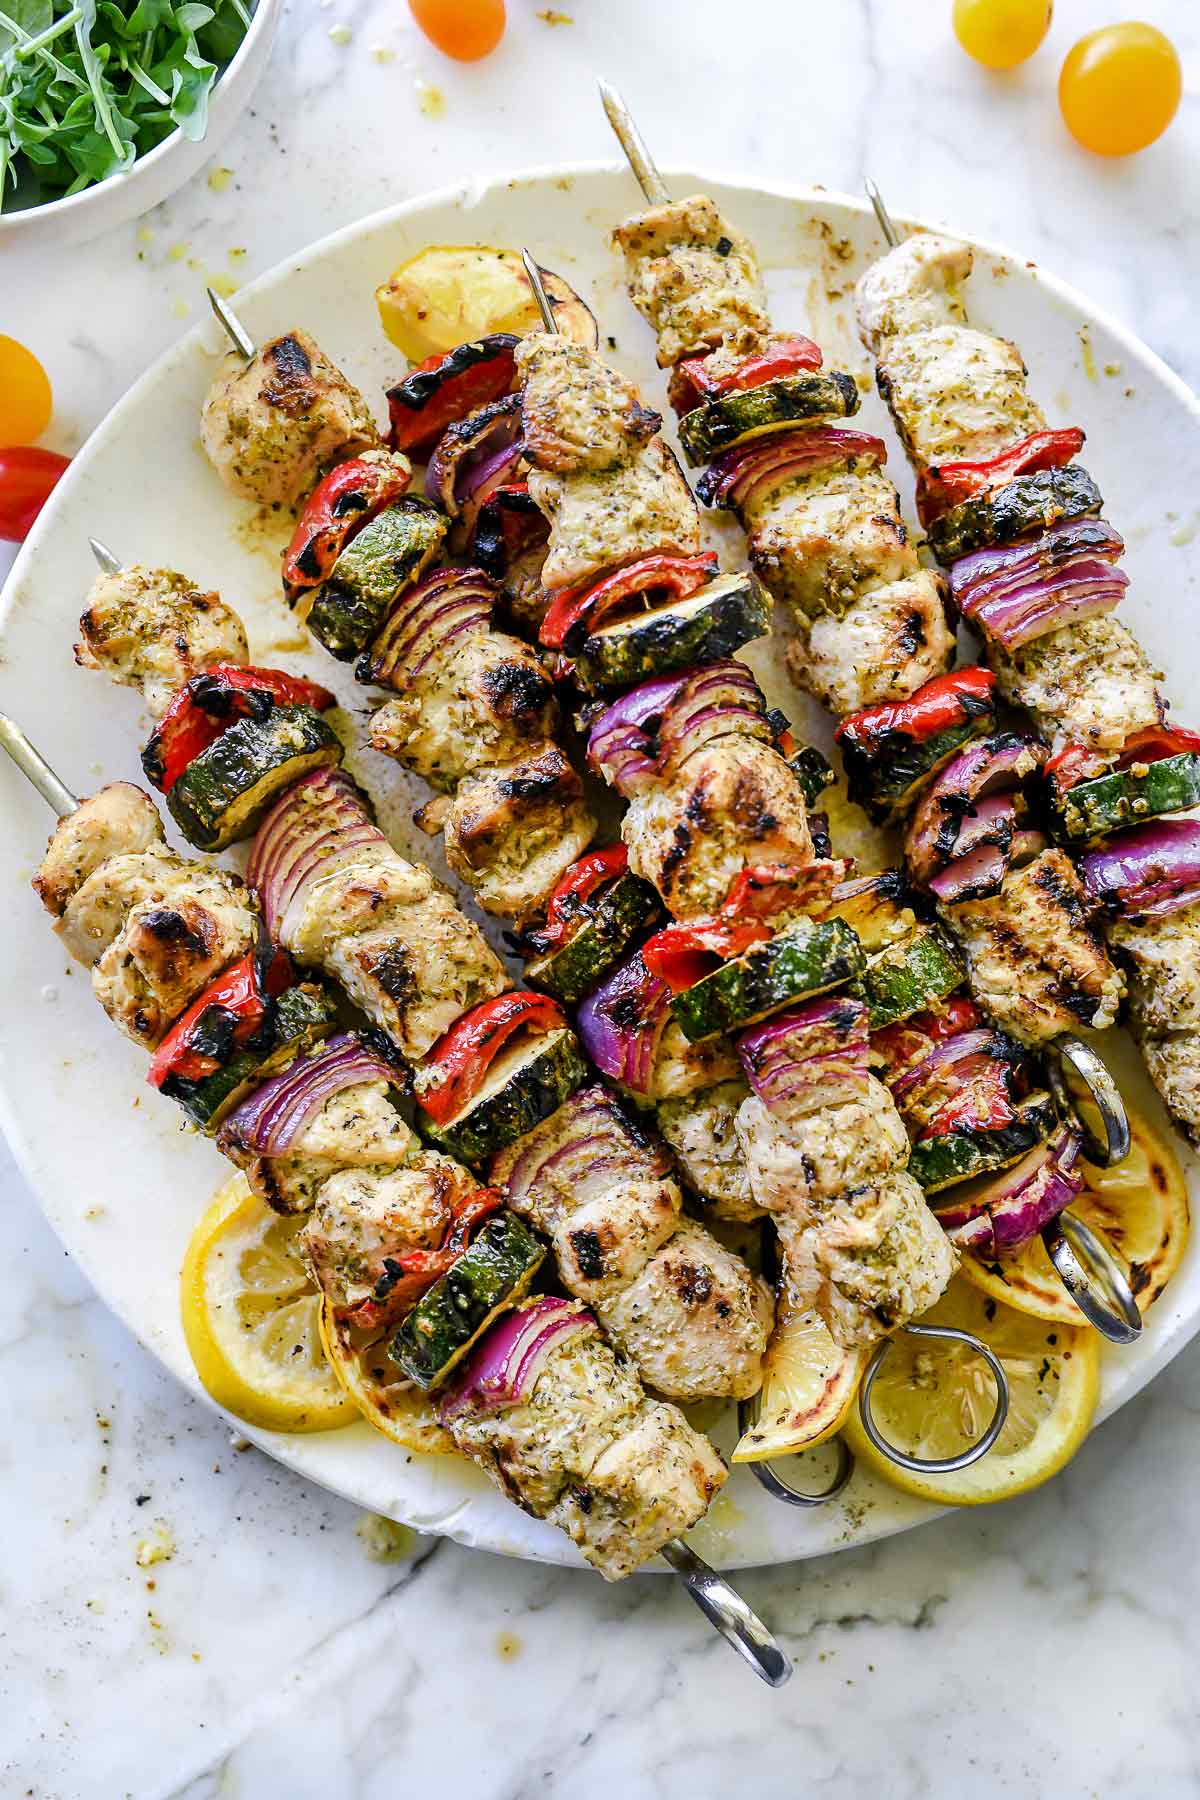 Greek Chicken Kebabs | foodiecrush.com #chicken #grill #chicken #kebab